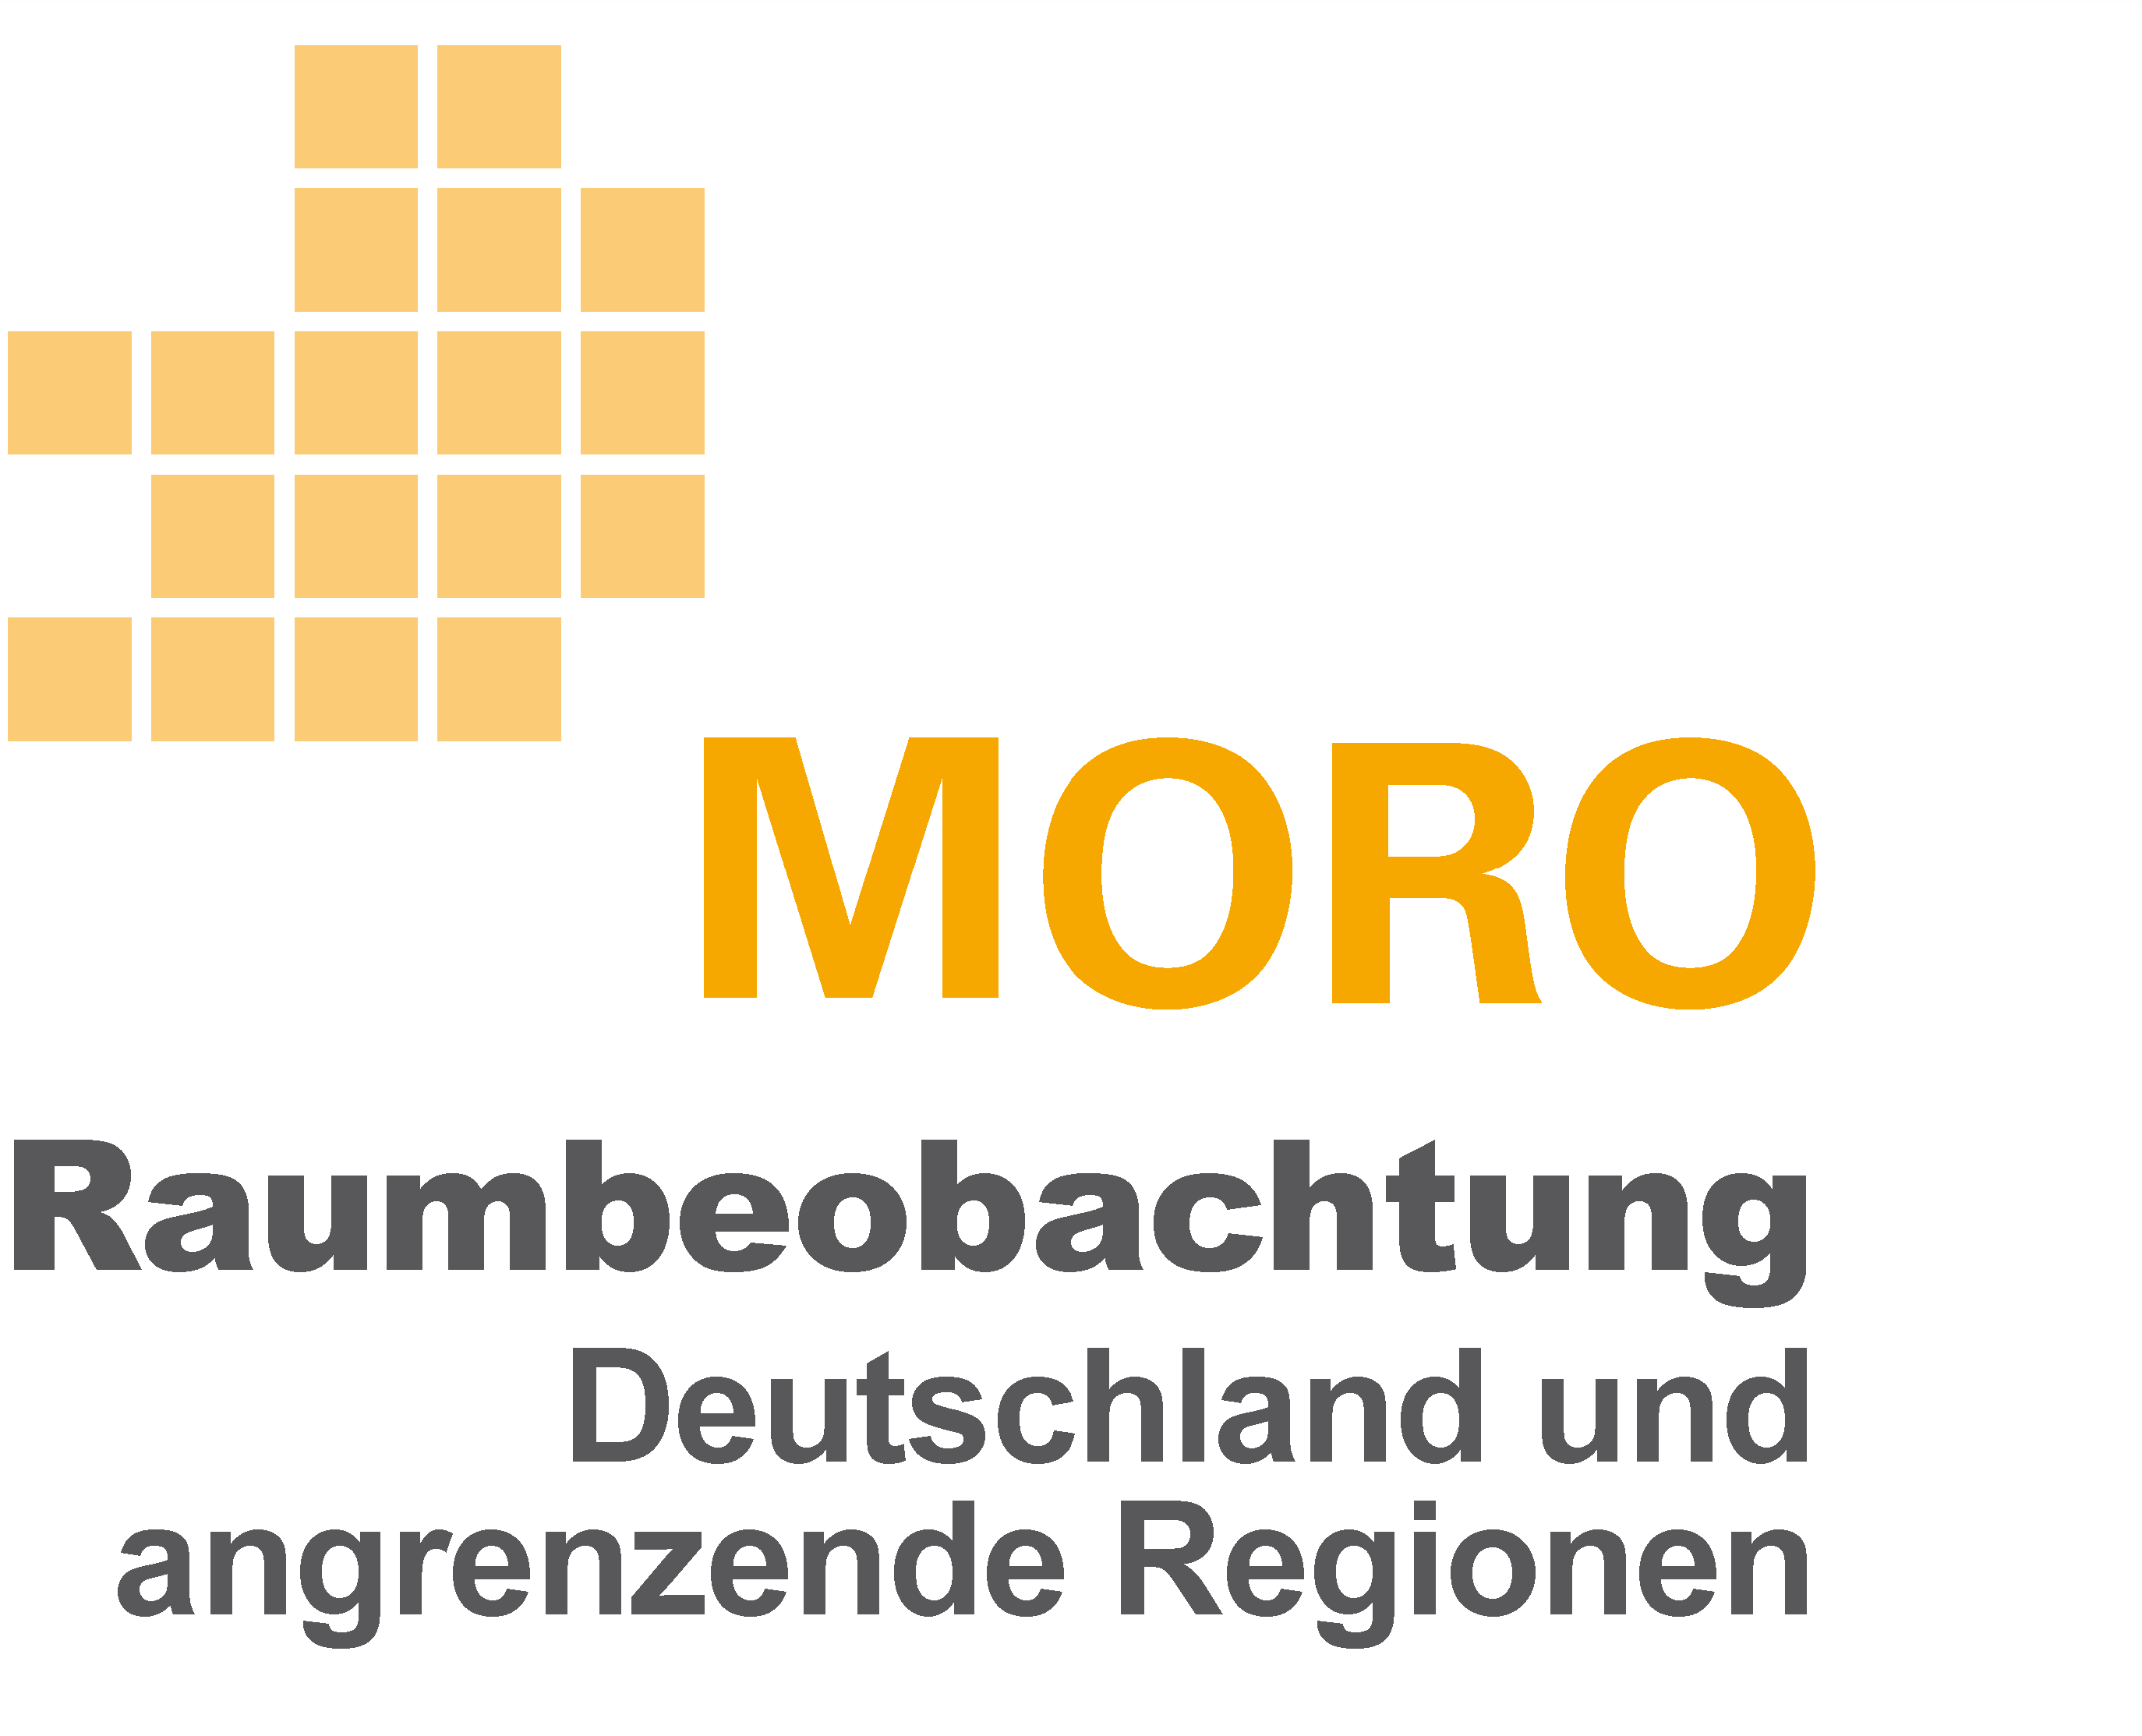 MORO: Raumbeobachtung Deutschland und angrenzende Regionen (2015-2018)